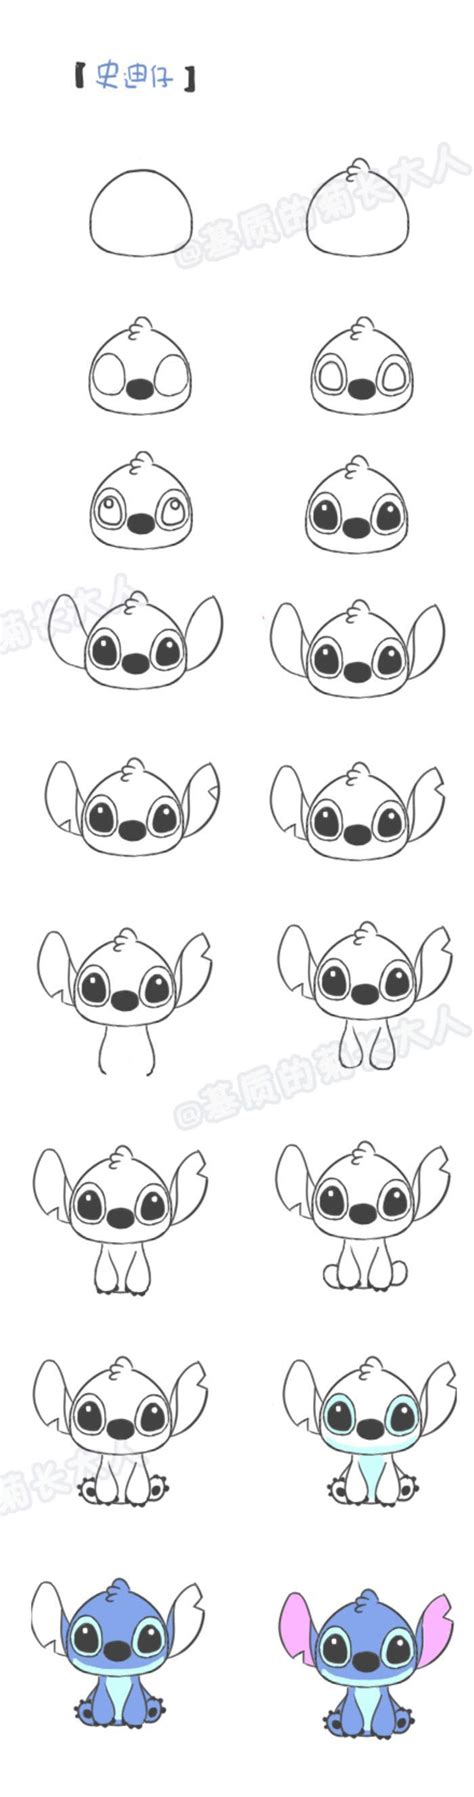 Disney figuren tekenen in stappen makkelijk olaafff tekeningen disney figuren disney tekenen cartoon. Afbeeldingsresultaat voor stitch tekenen (met afbeeldingen ...